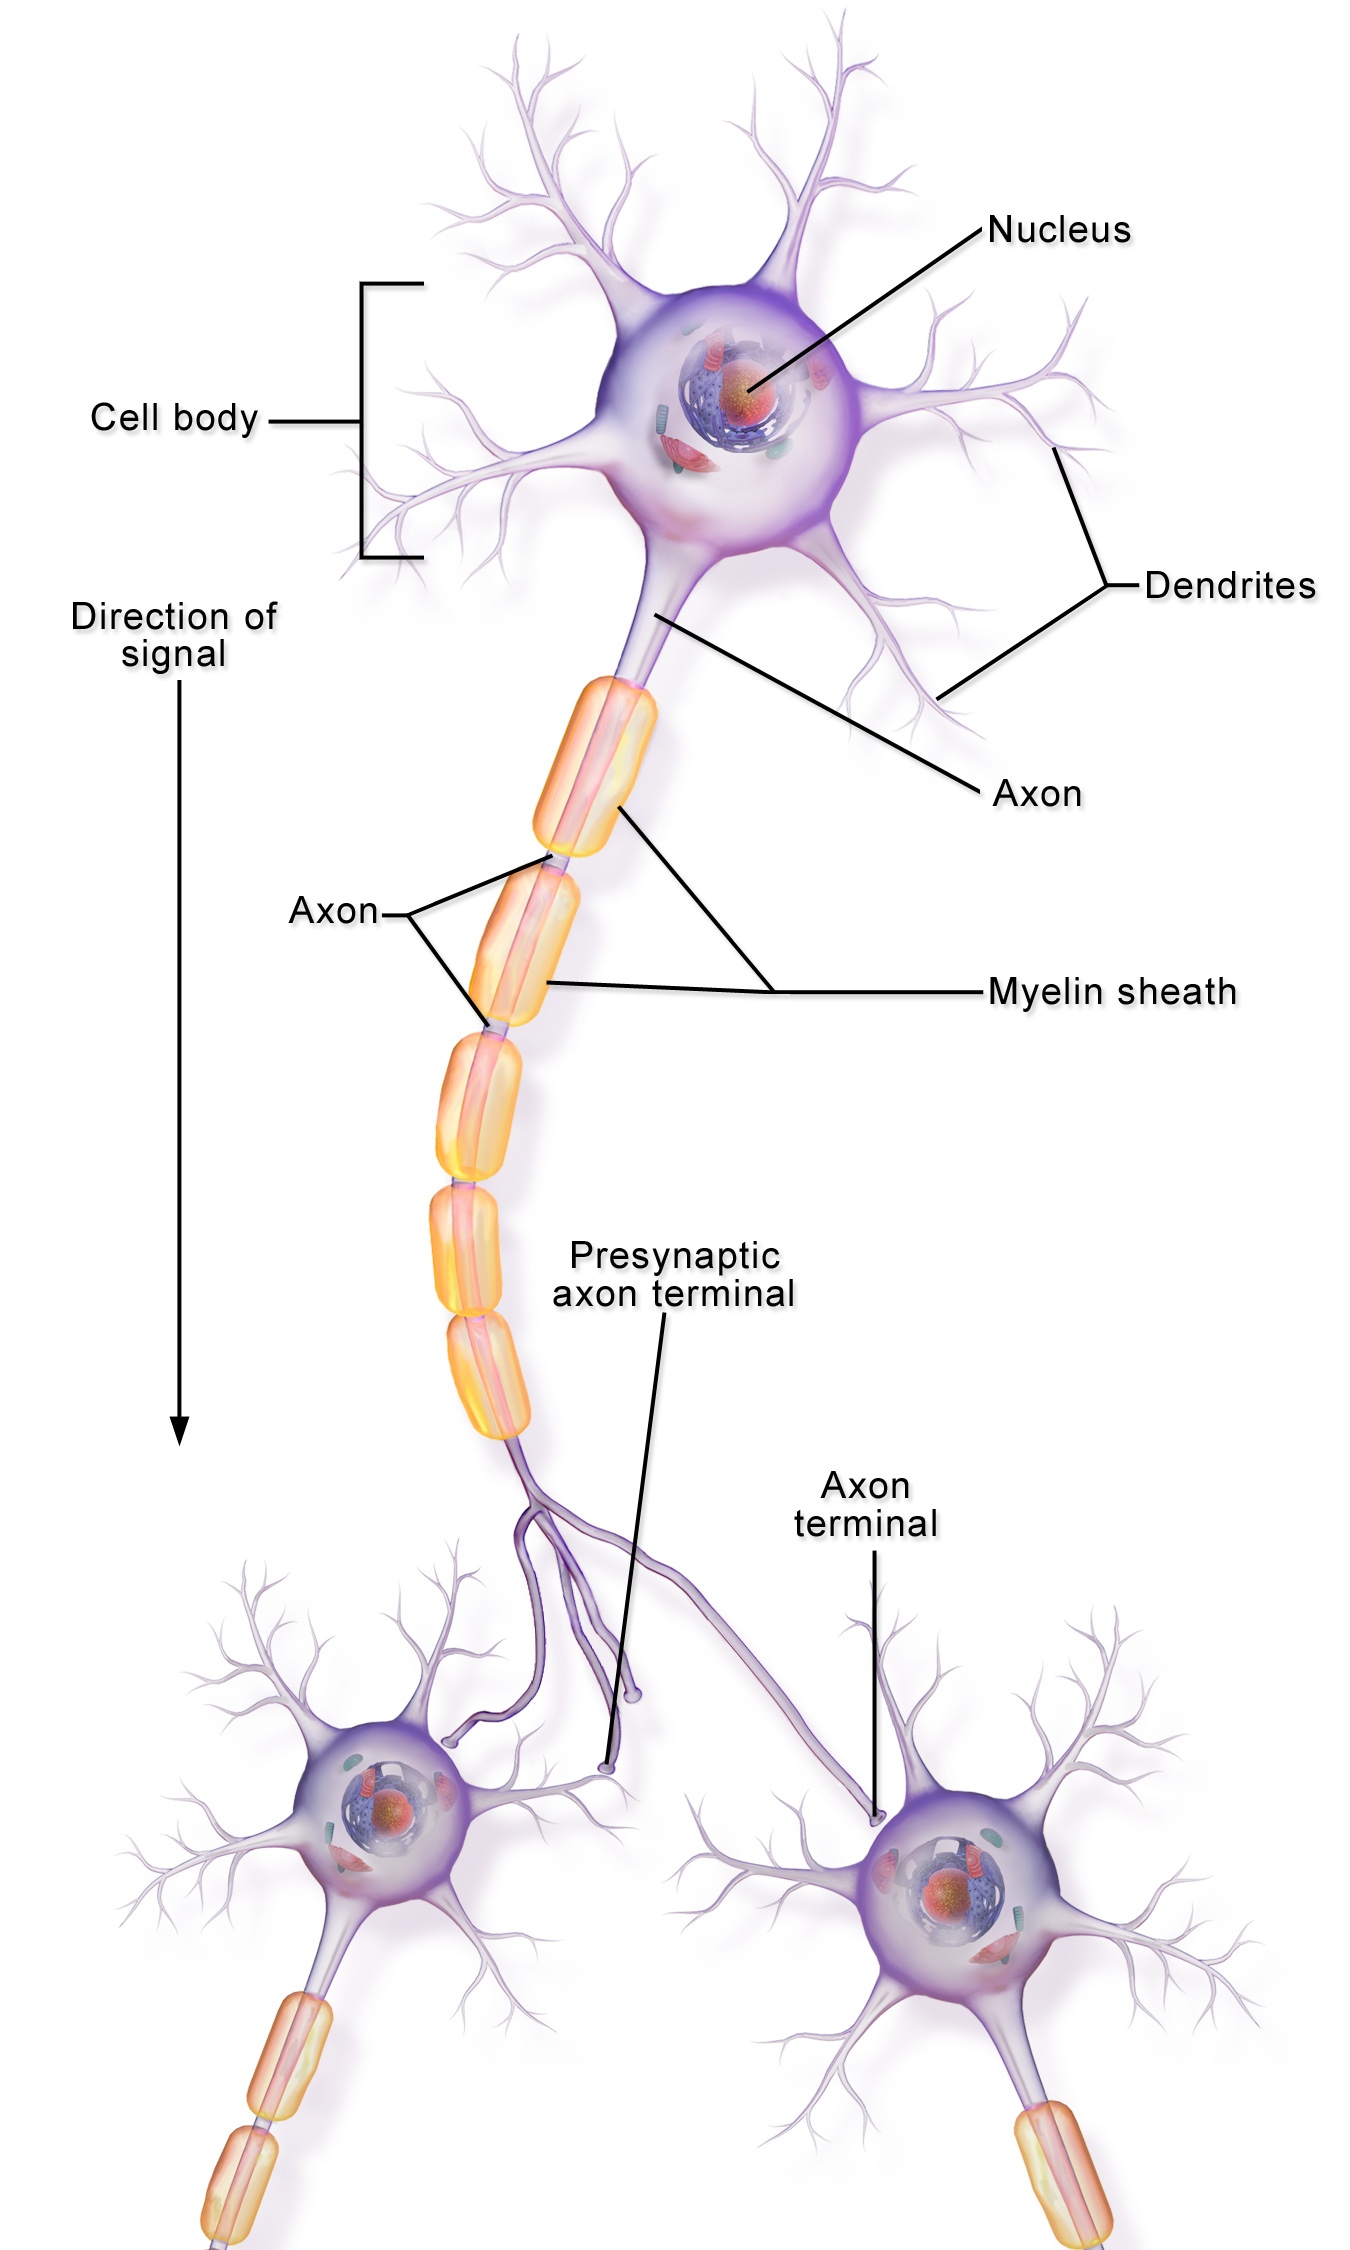 Neuroni moja ya multipolar yenye dendrites nyingi na matawi ya muda mrefu ya axon kufikia neurons nyingine 2.